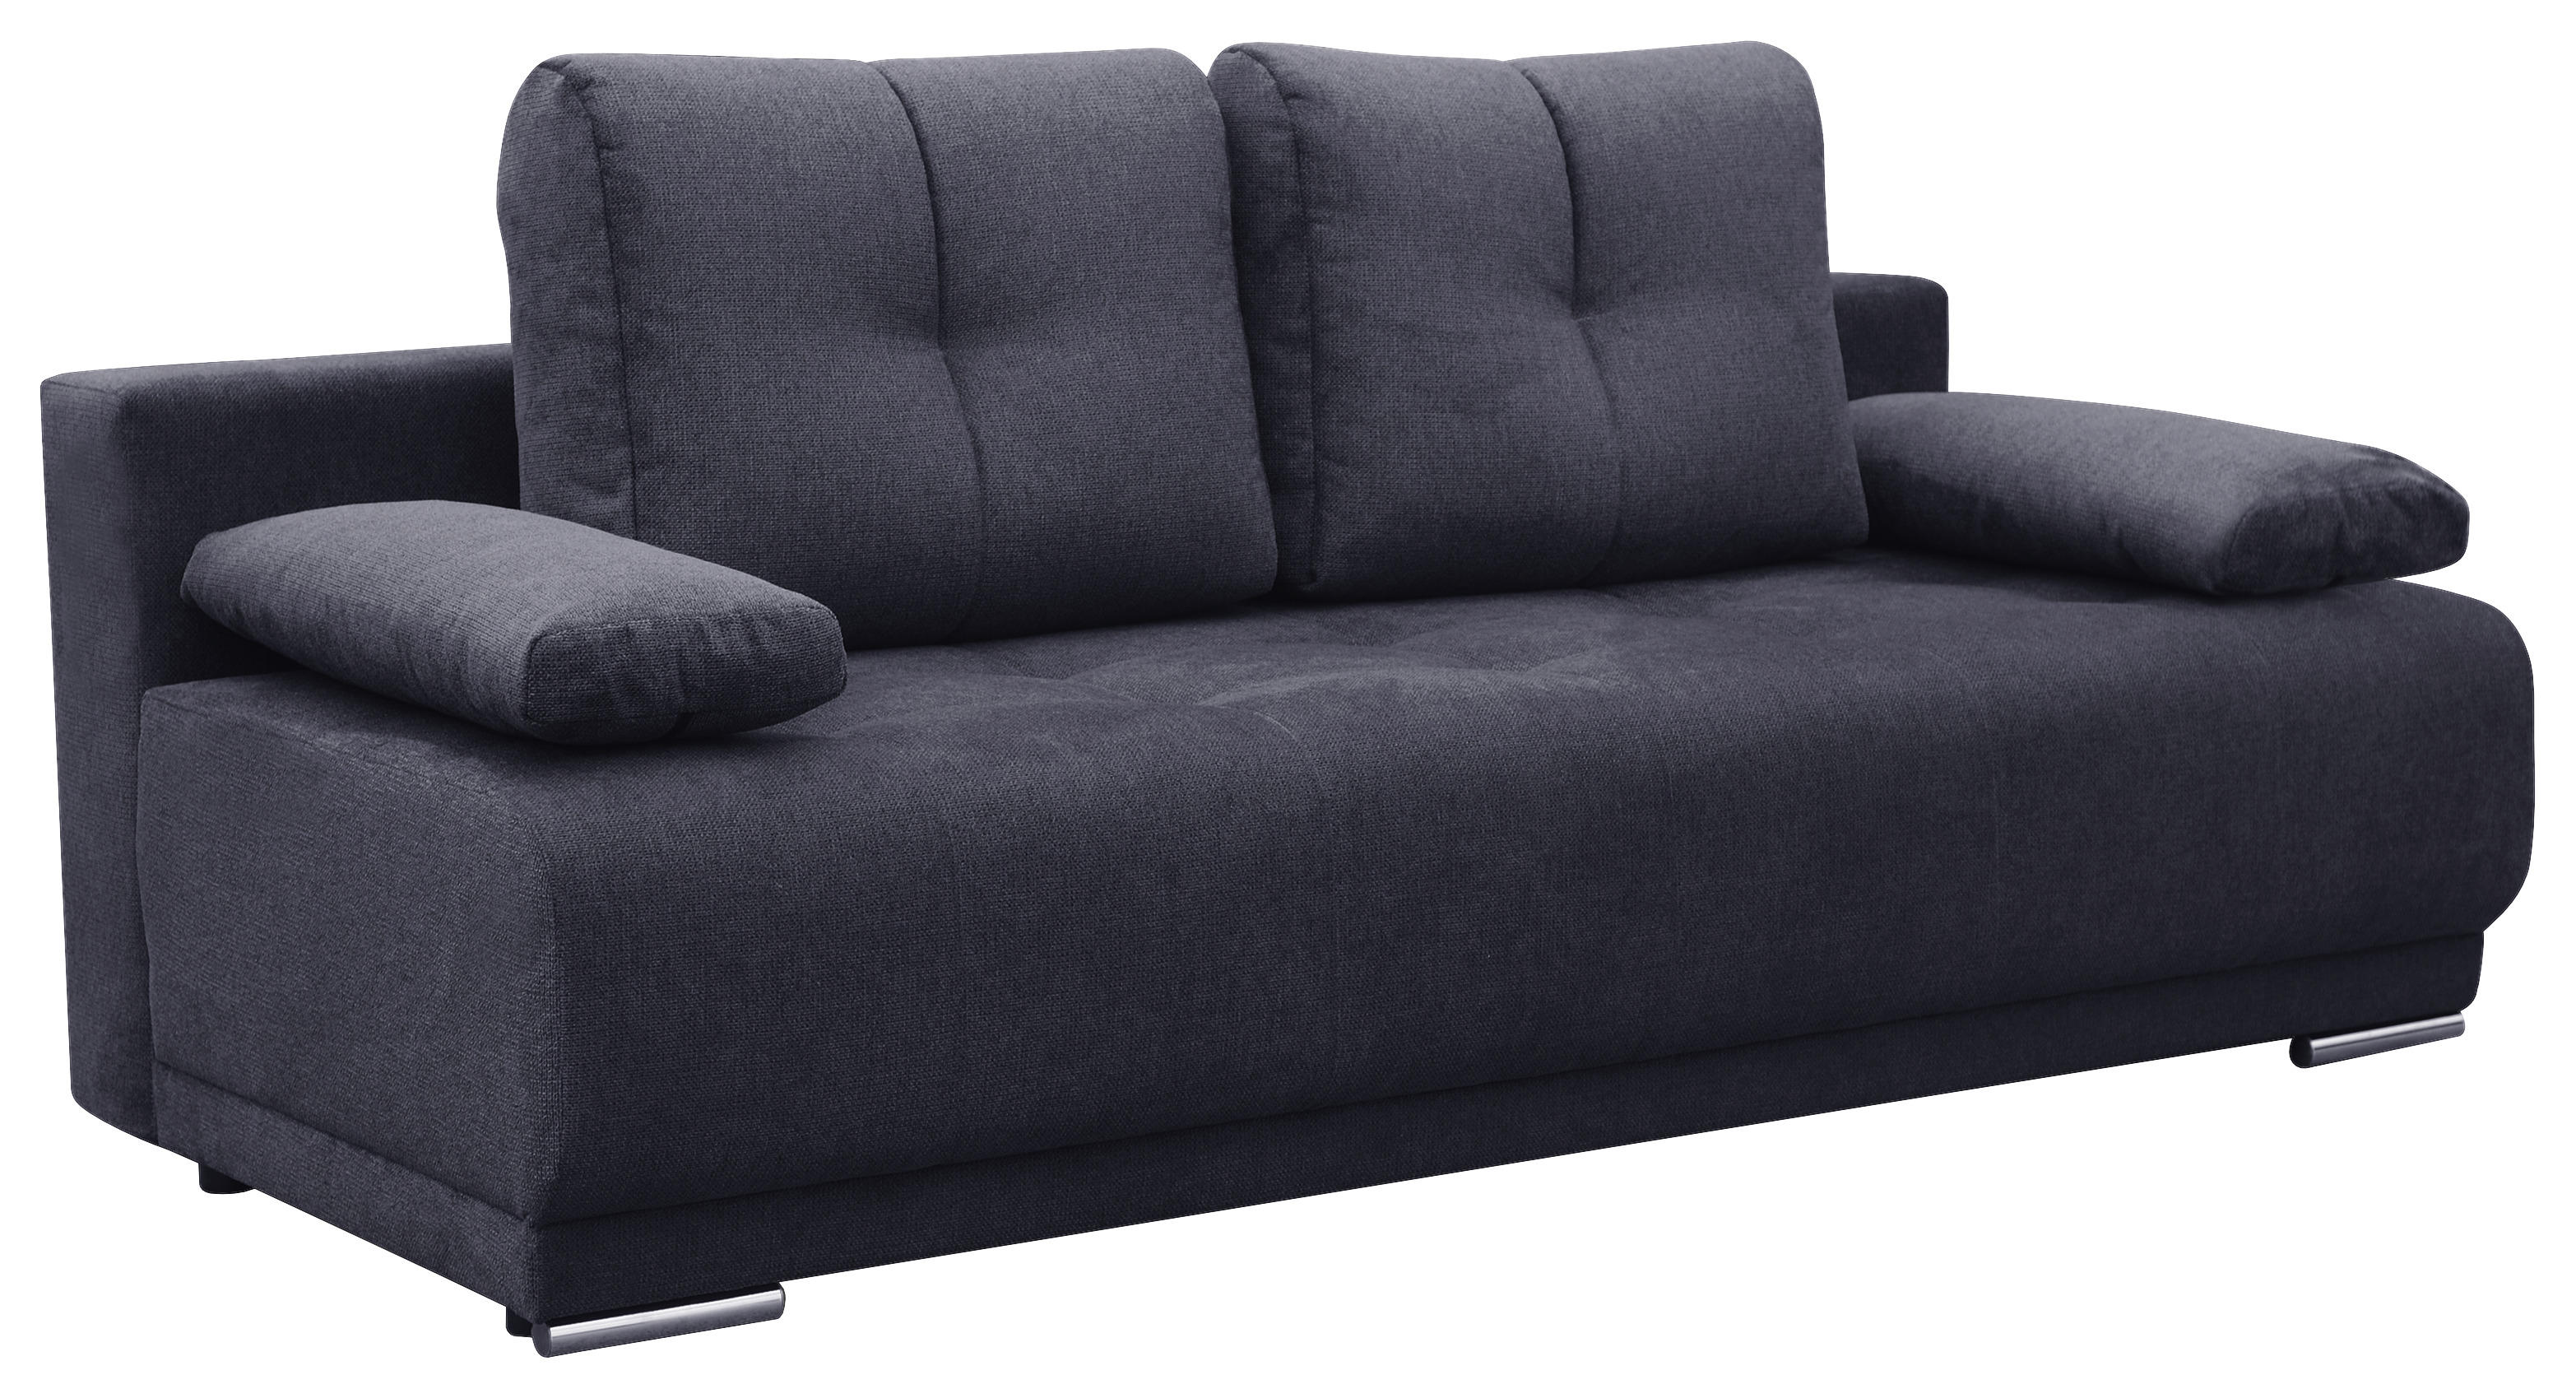 Poco couch mit schlaffunktion - Die ausgezeichnetesten Poco couch mit schlaffunktion auf einen Blick